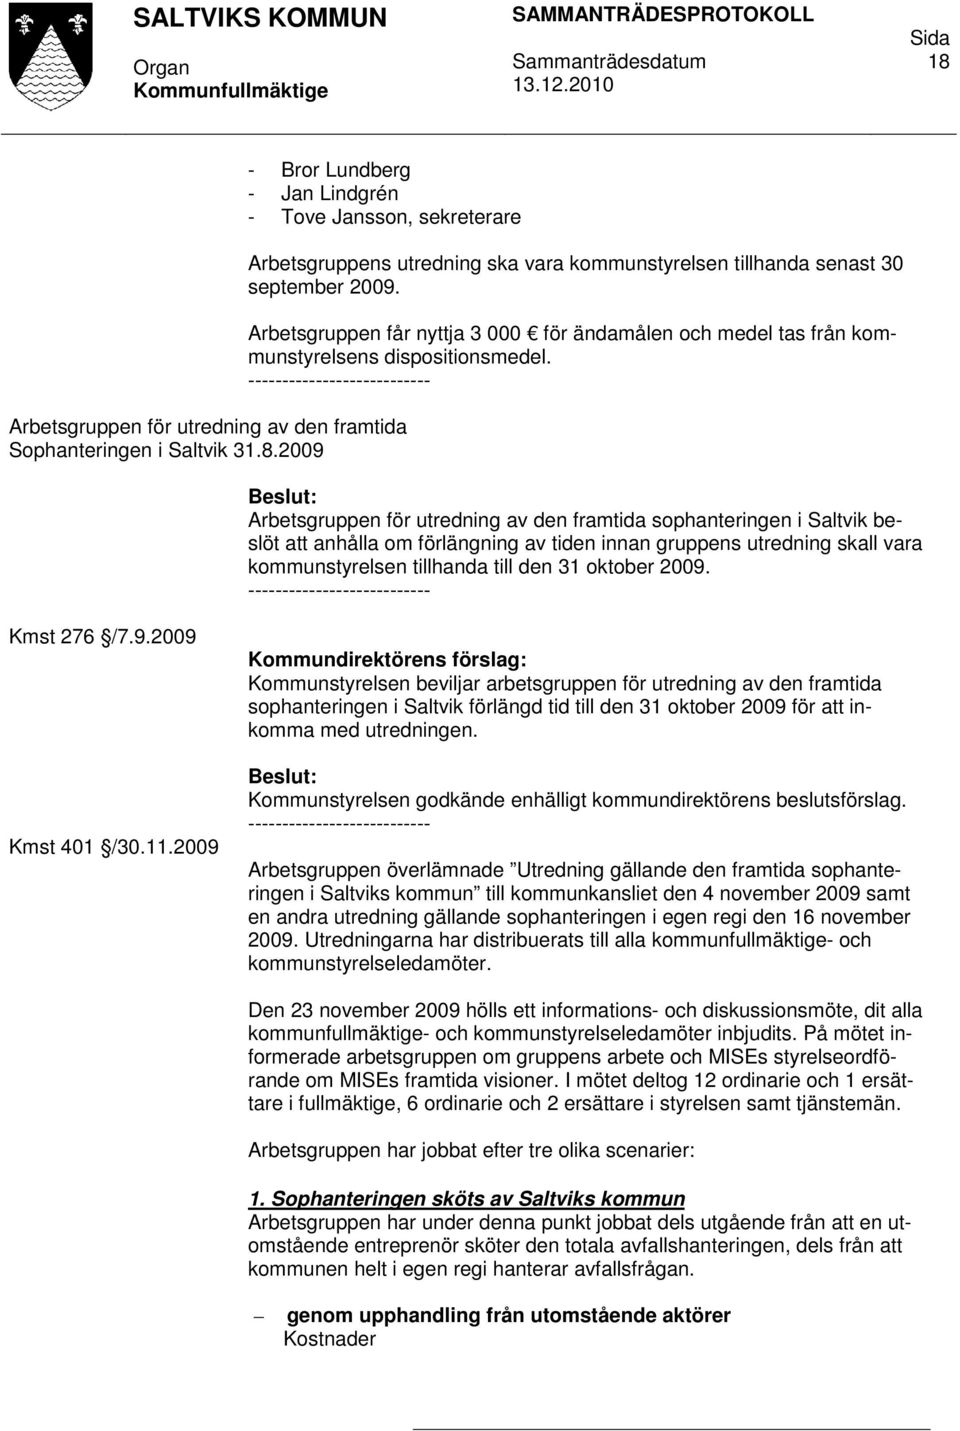 Arbetsgruppen för utredning av den framtida sophanteringen i Saltvik beslöt att anhålla om förlängning av tiden innan gruppens utredning skall vara kommunstyrelsen tillhanda till den 31 oktober 2009.